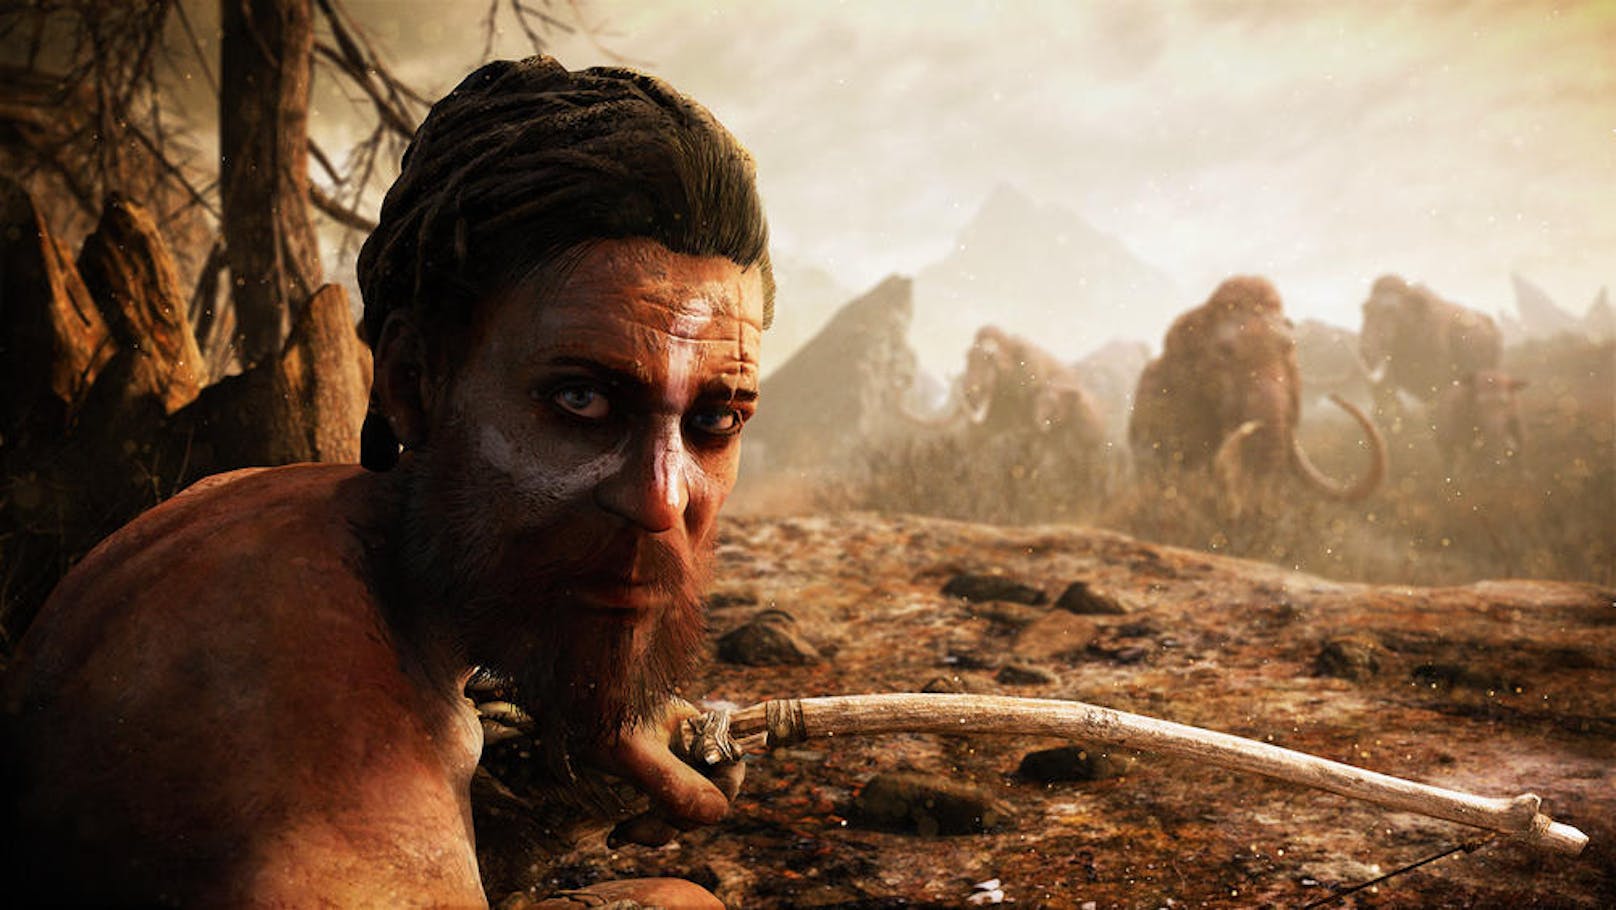 In Far Cry Primal findet man sich als Jäger namens Takkar vom Stamm der Wenja im fiktiven Tal Oros in Mitteleuropa wieder.